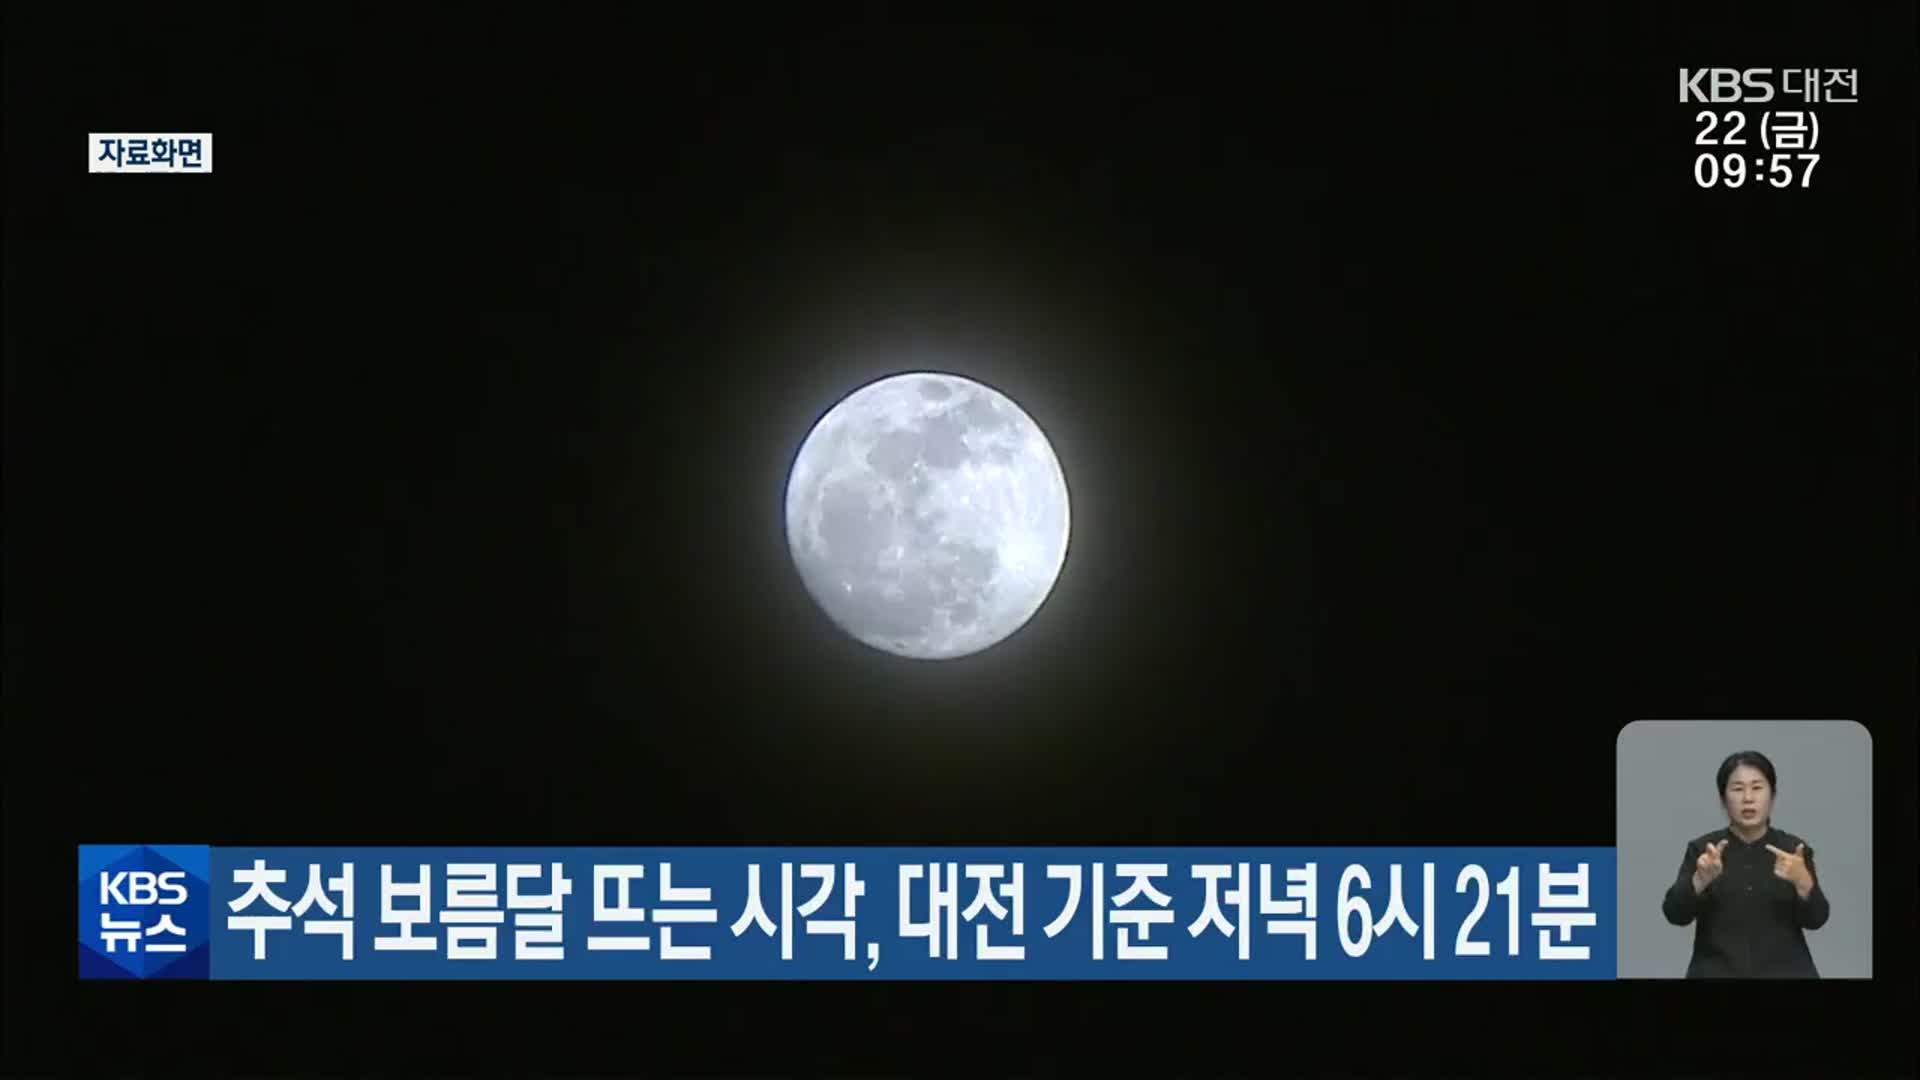 추석 보름달 뜨는 시각, 대전 기준 저녁 6시 21분